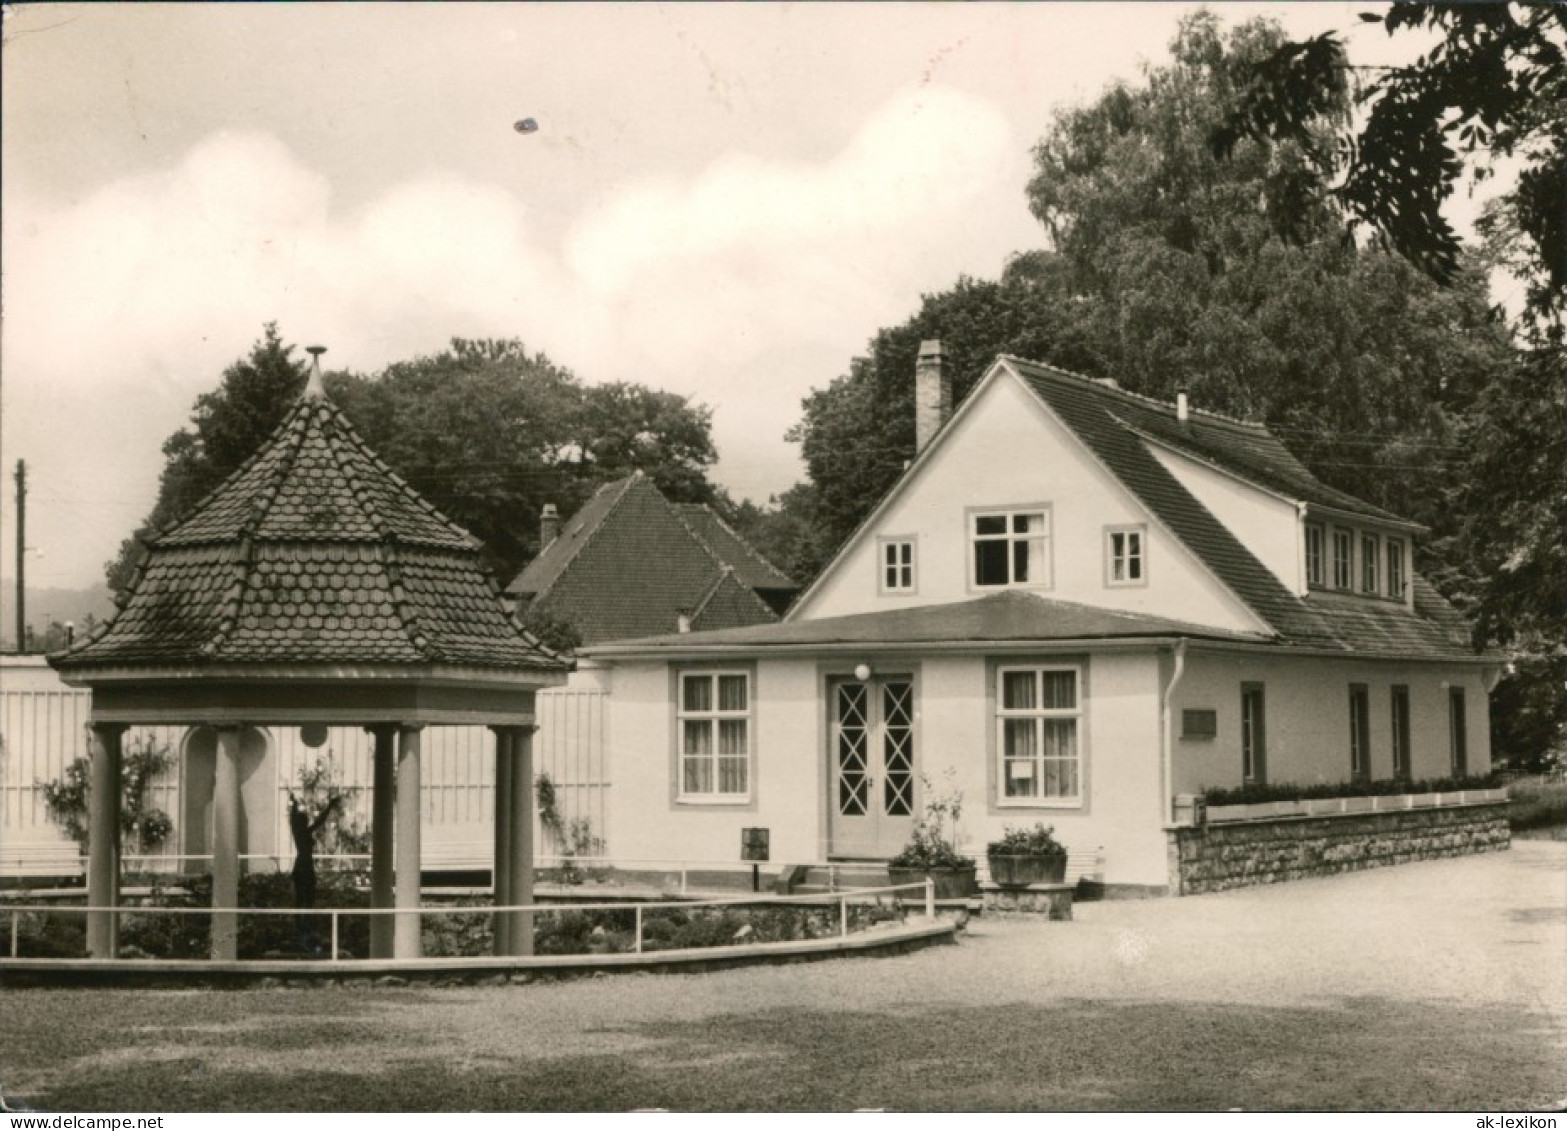 Ansichtskarte Bad Berka Goethe-Brunnen Mit Trinkhalle 1970 - Bad Berka